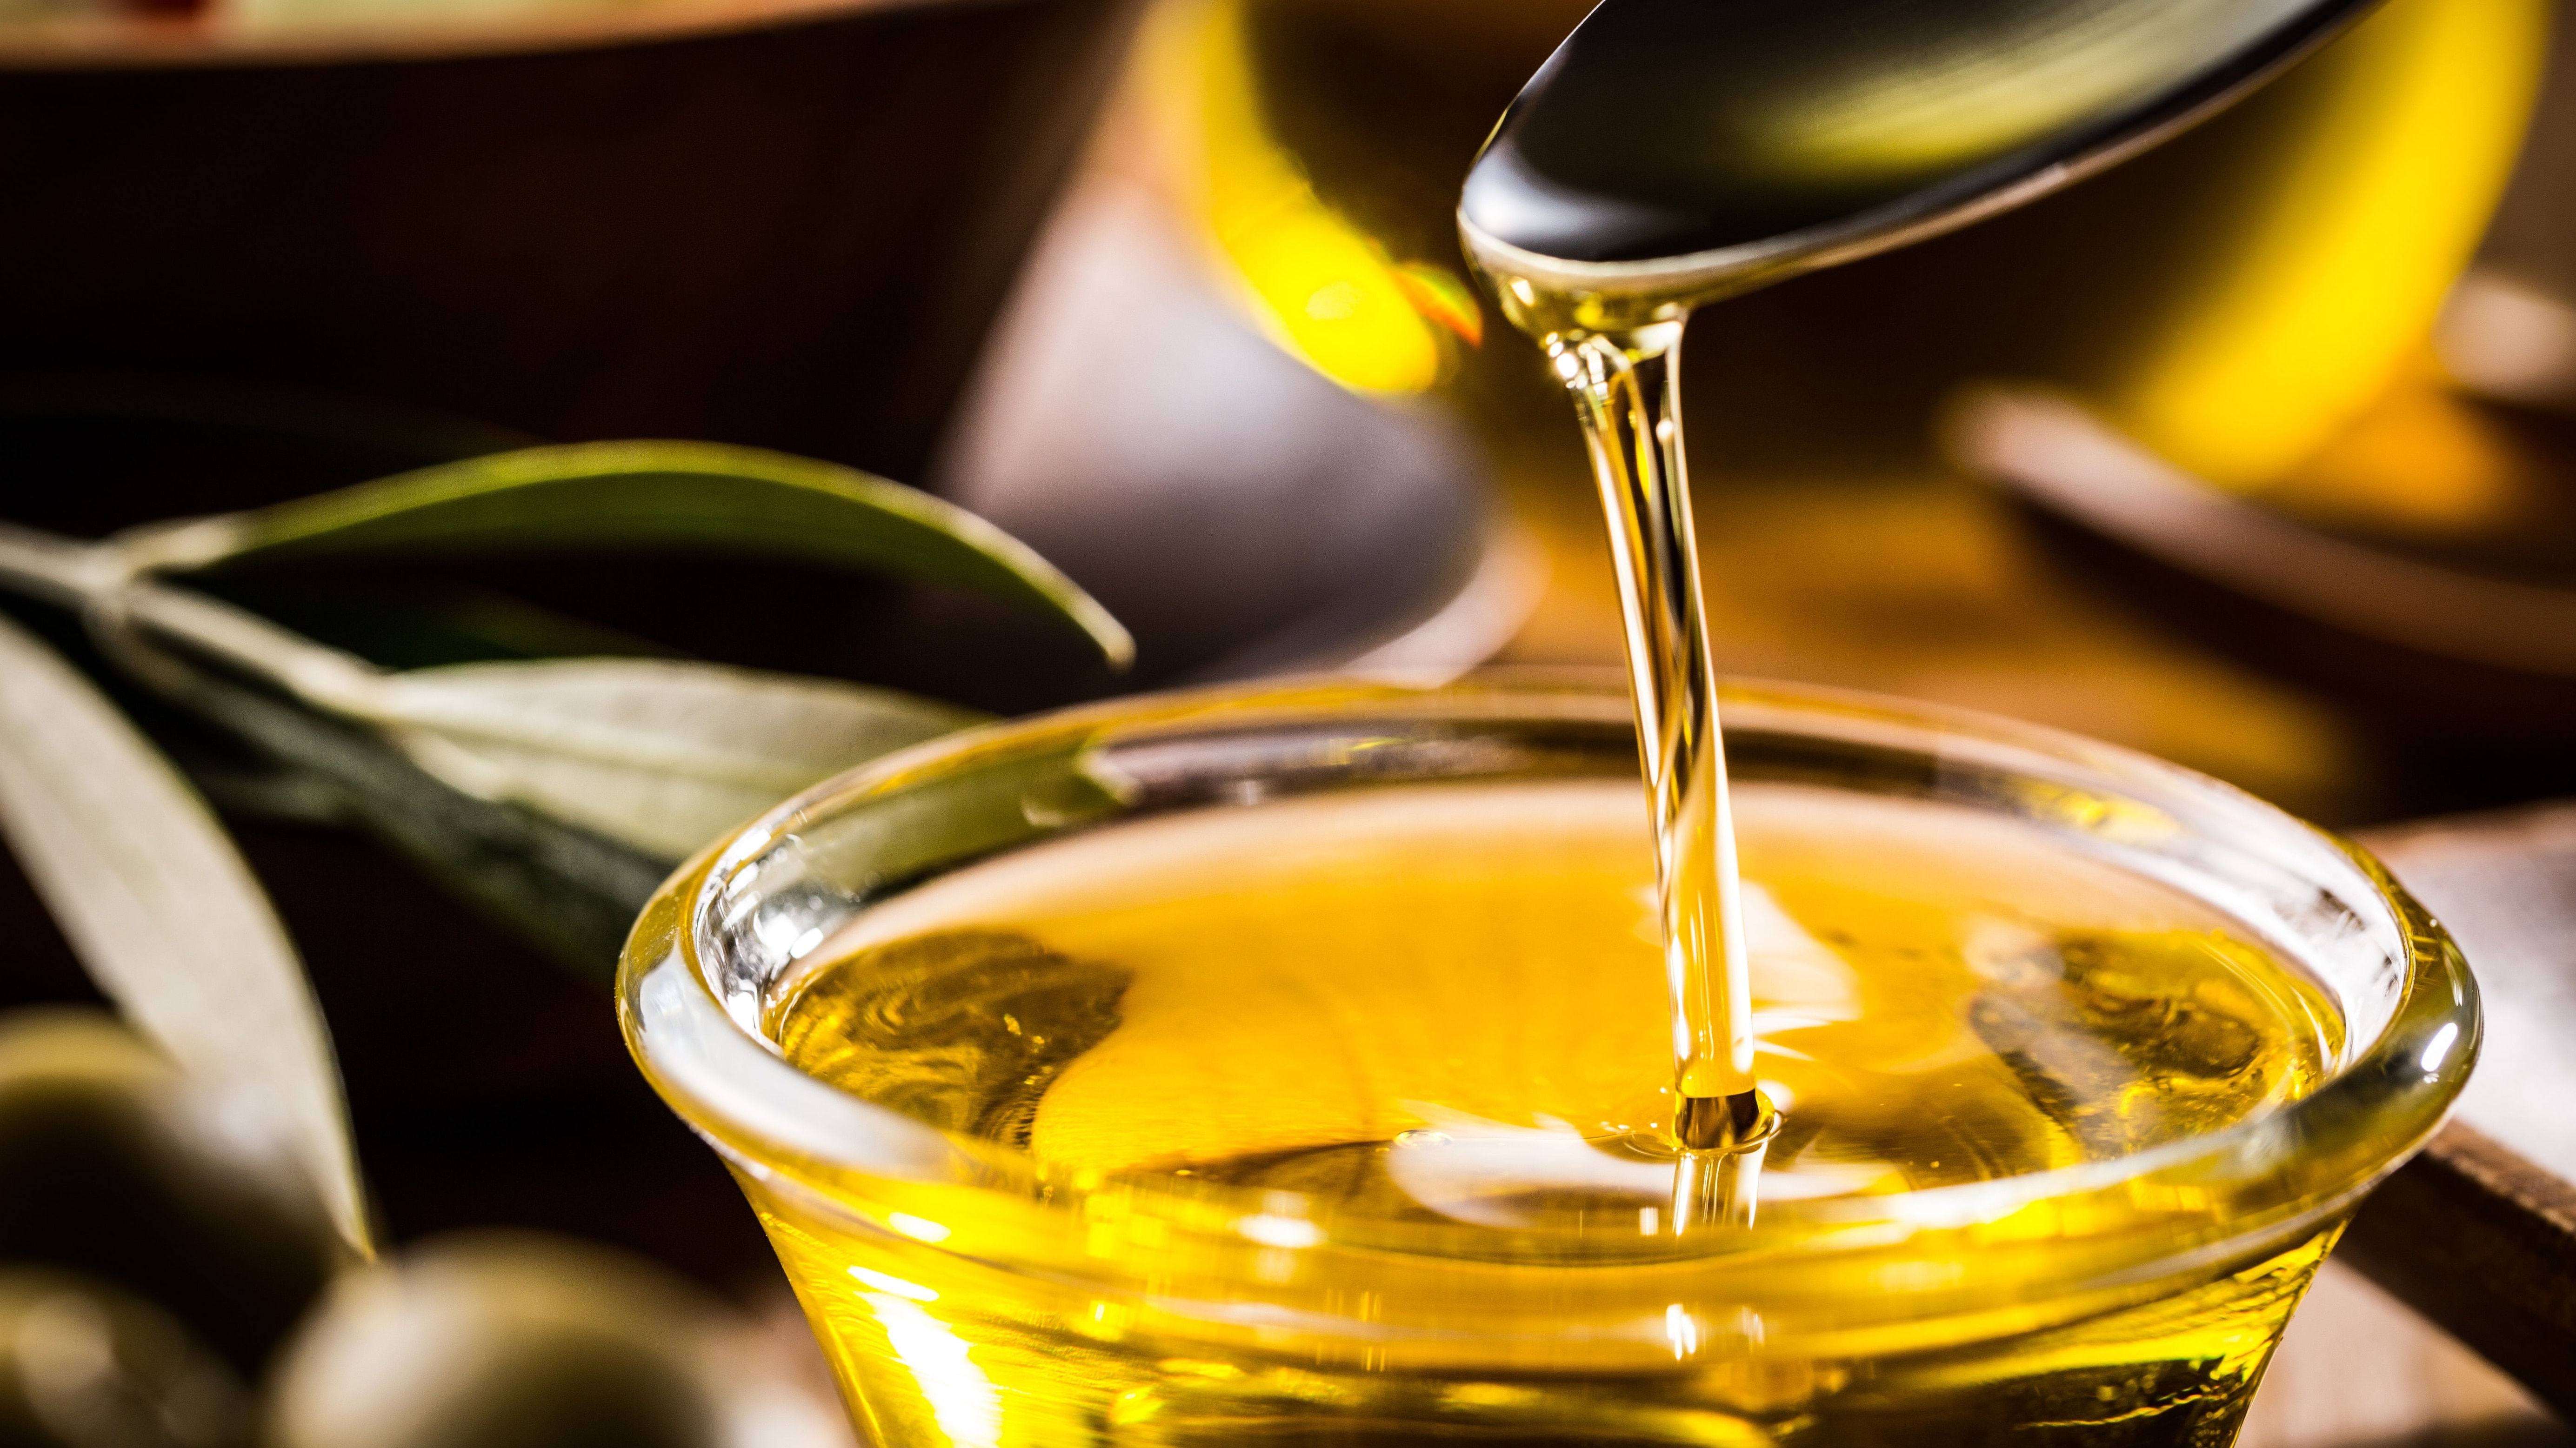 Olivenöl ist wohl das bekannteste und beliebteste Fruchtöl